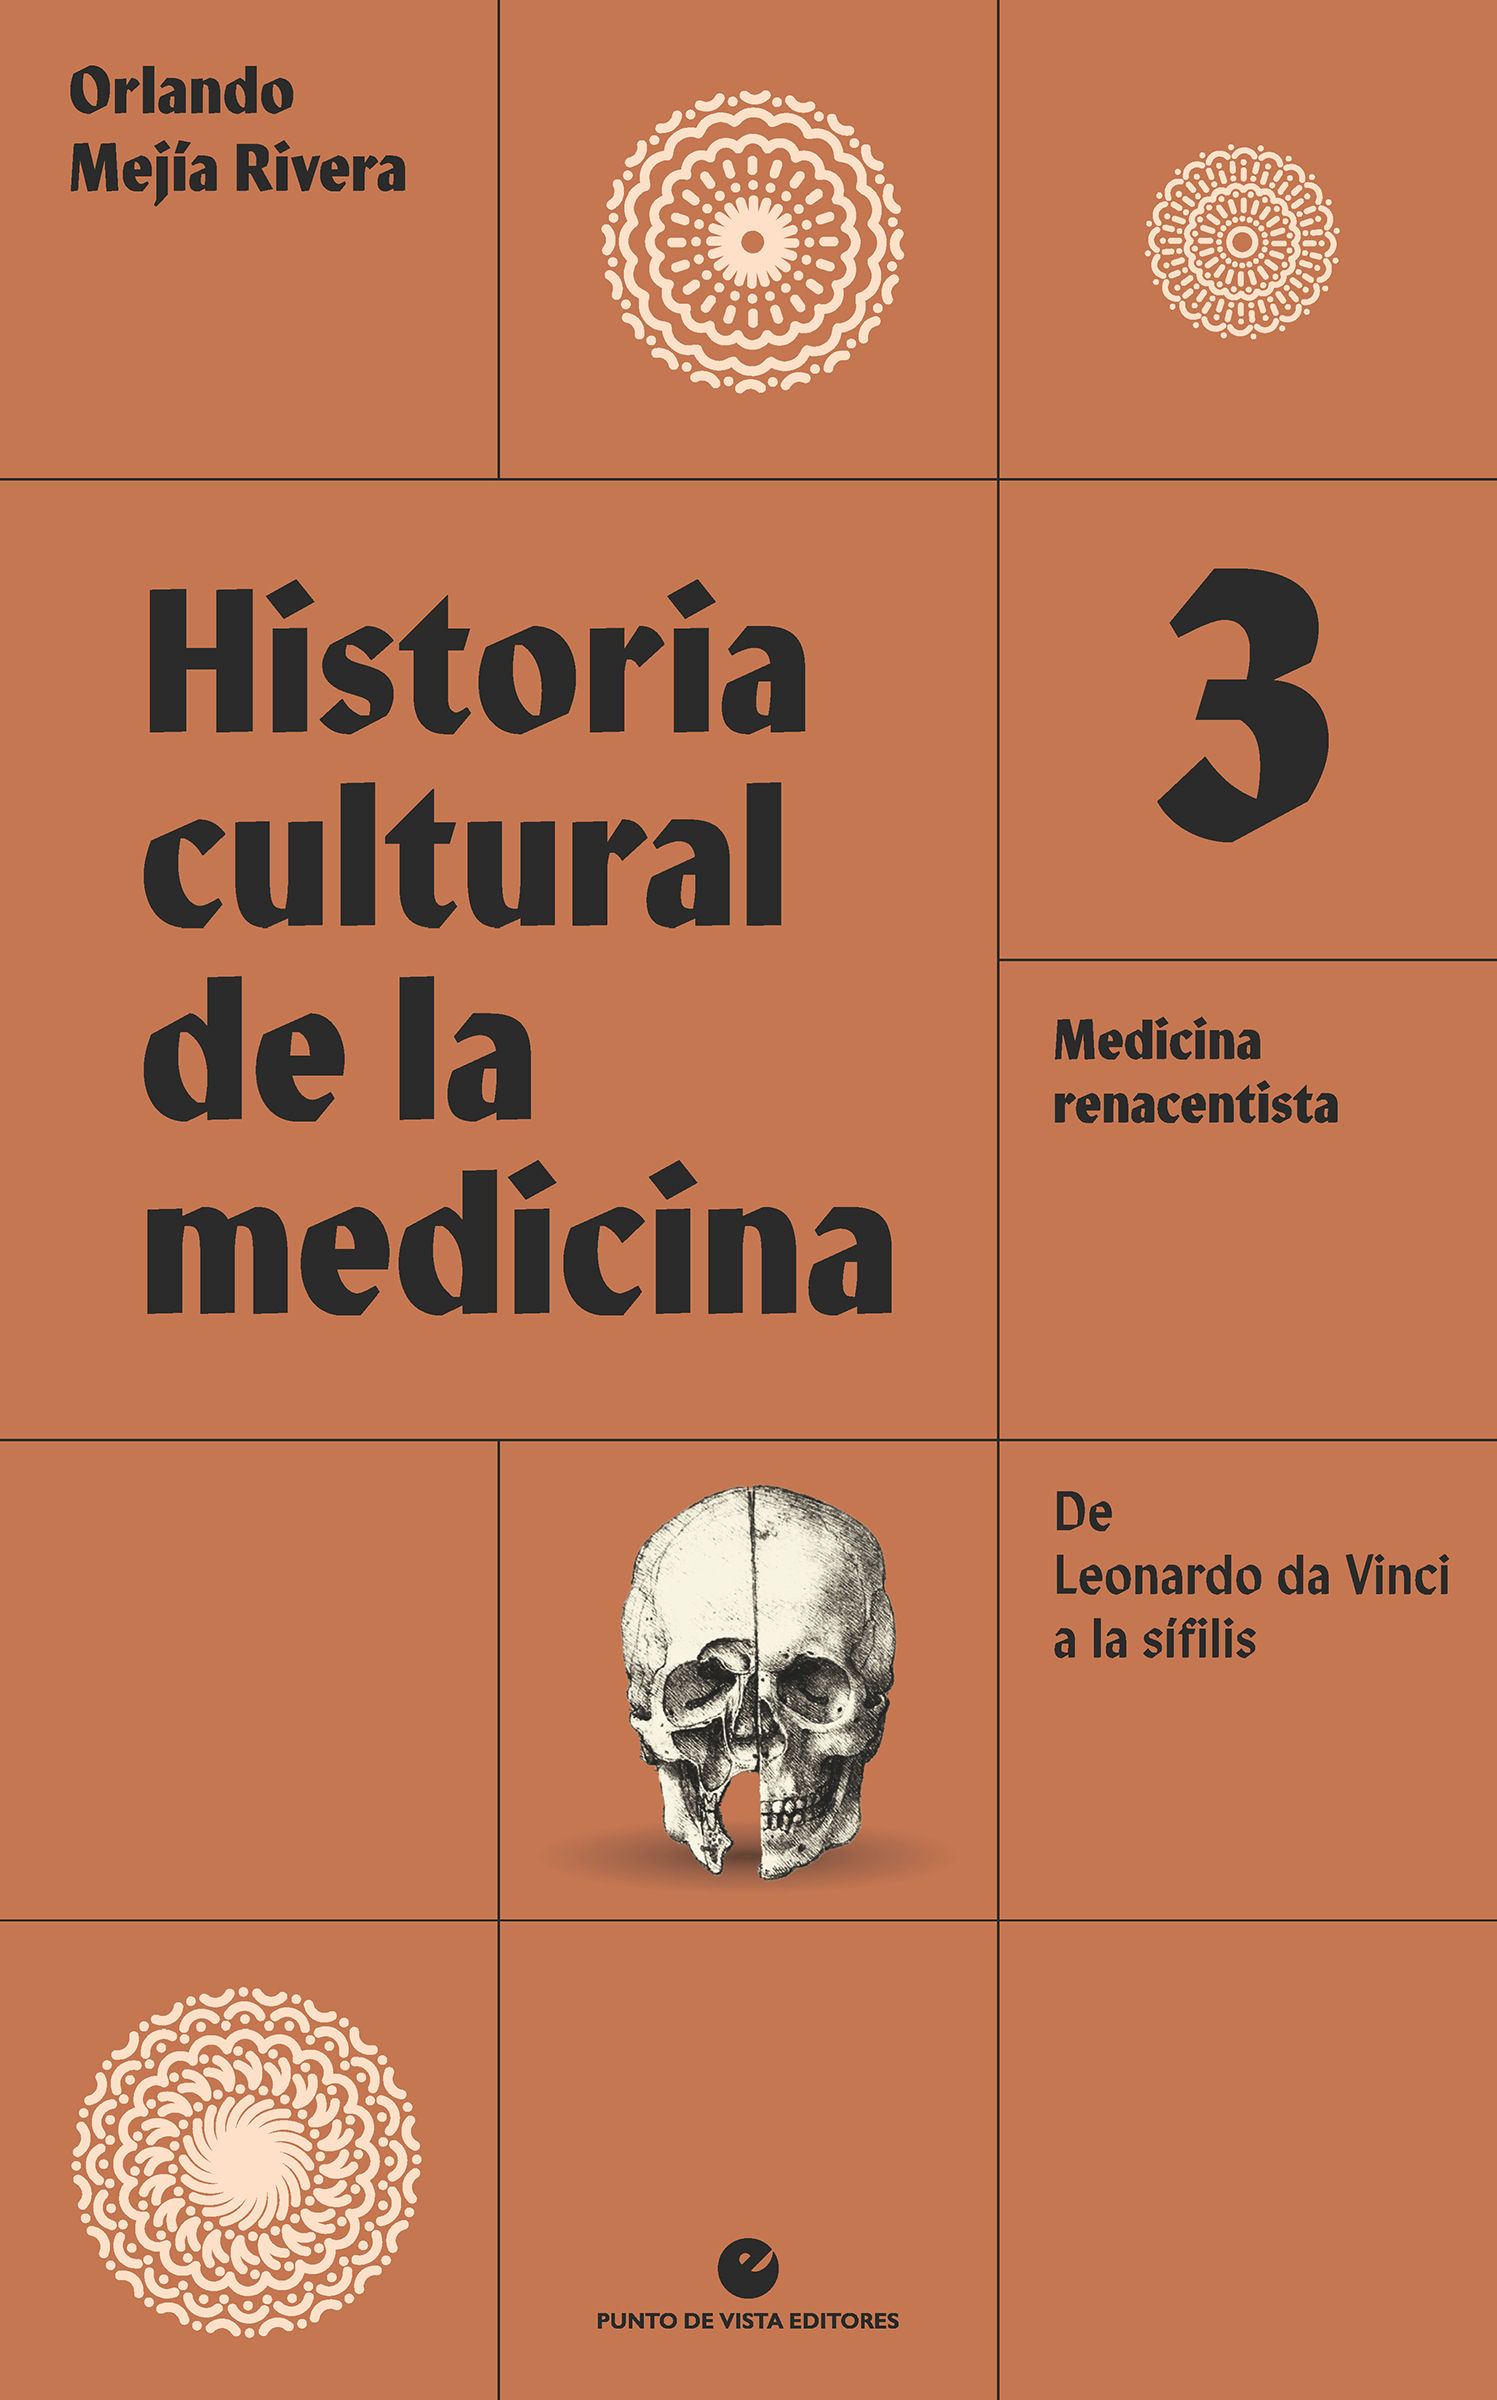 HISTORIA CULTURAL DE LA MEDICINA. VOL. 3